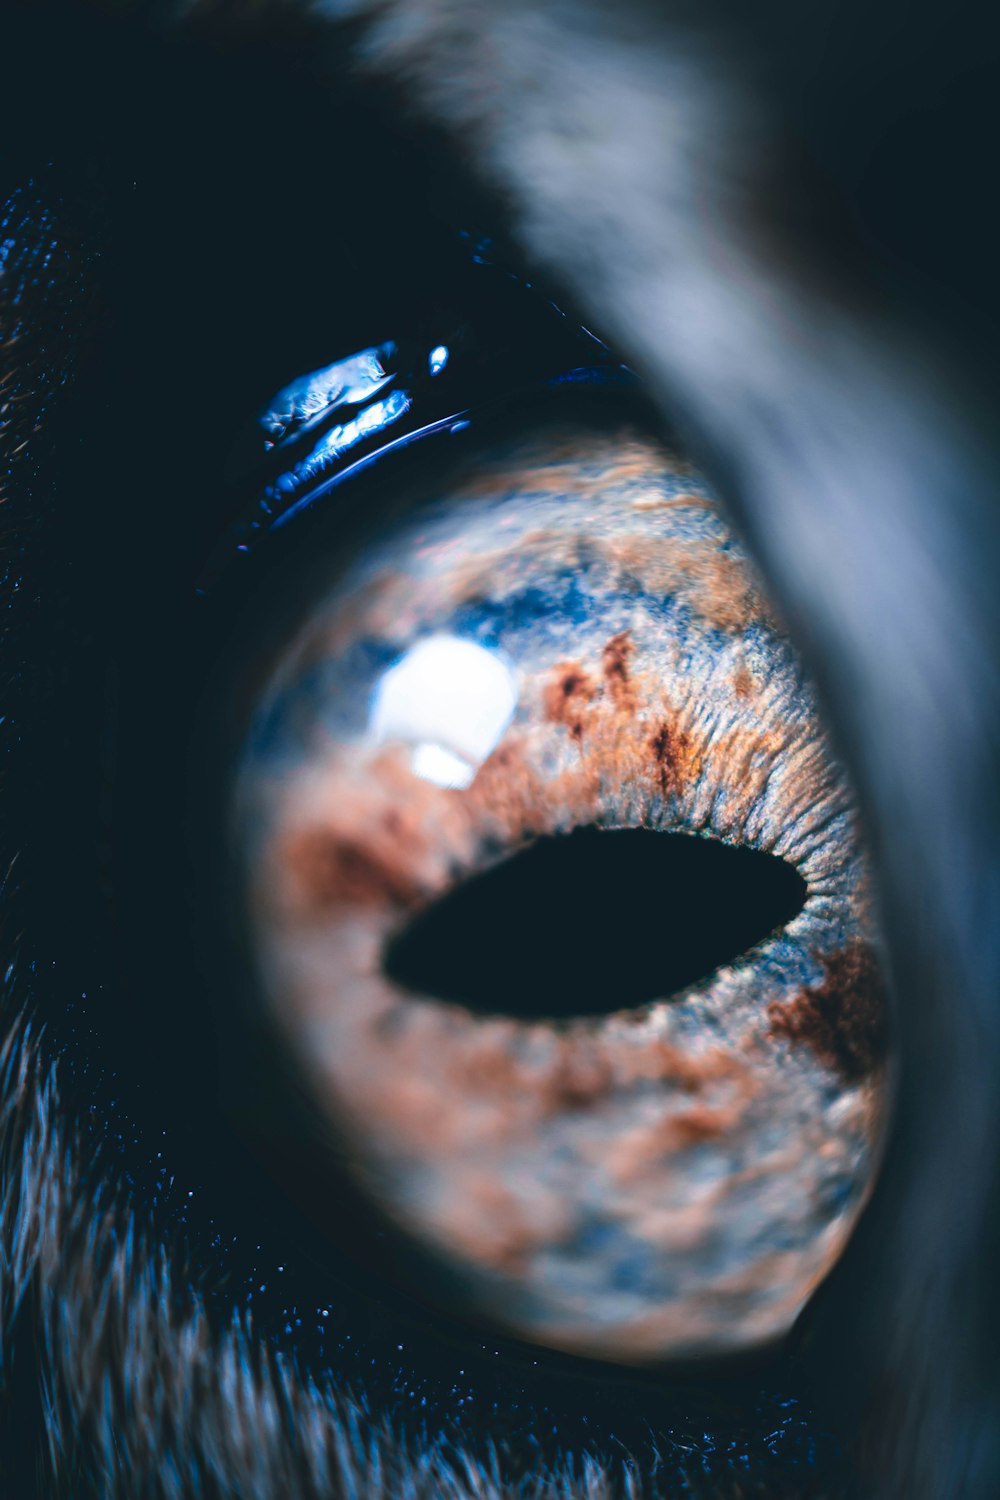 Un primo piano dell'occhio di un cane con uno sfondo sfocato